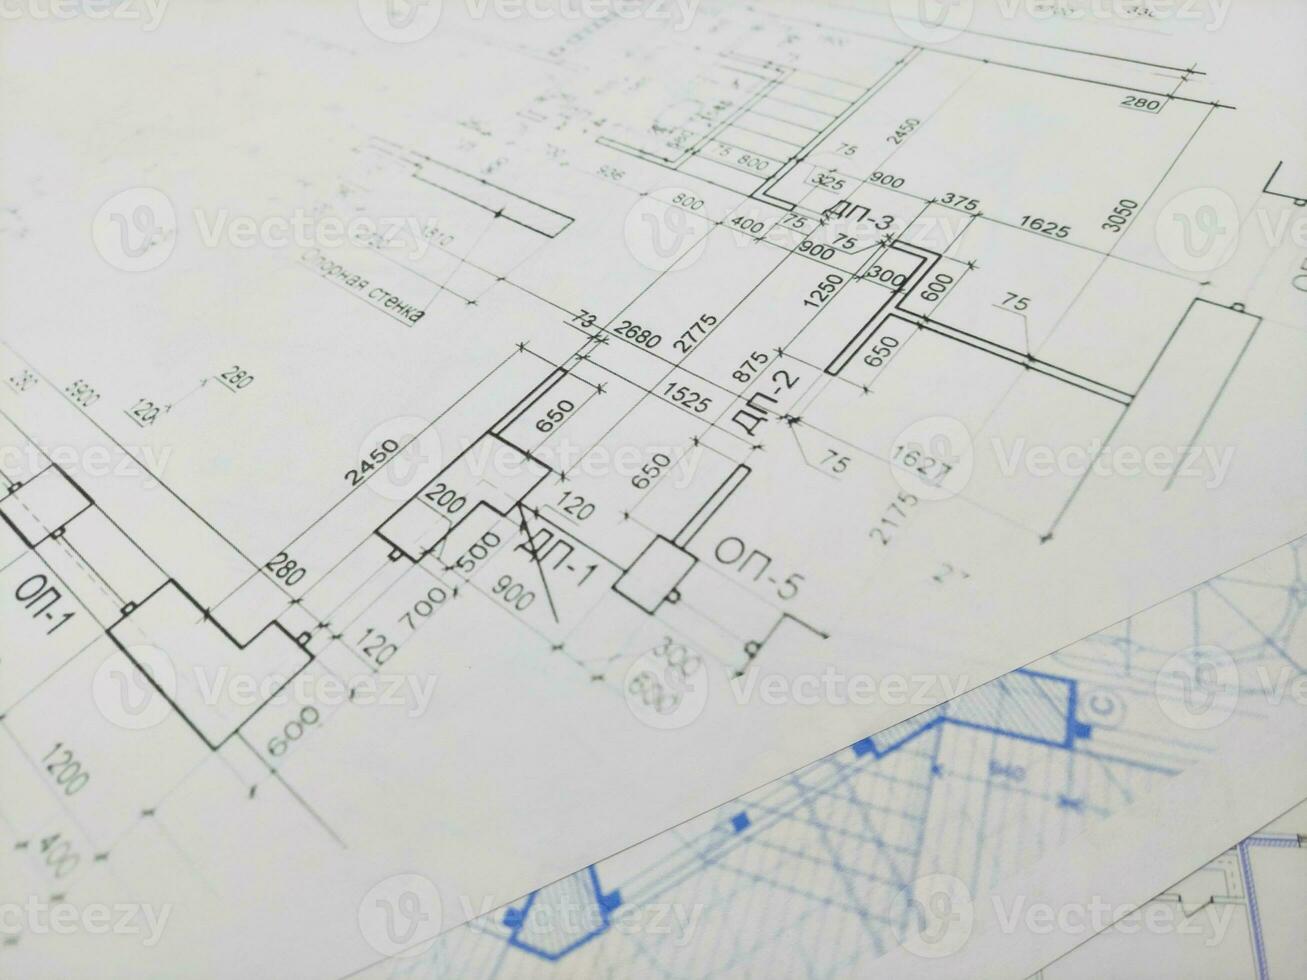 casa plan proyecto Ingenieria diseño en lado ver foto